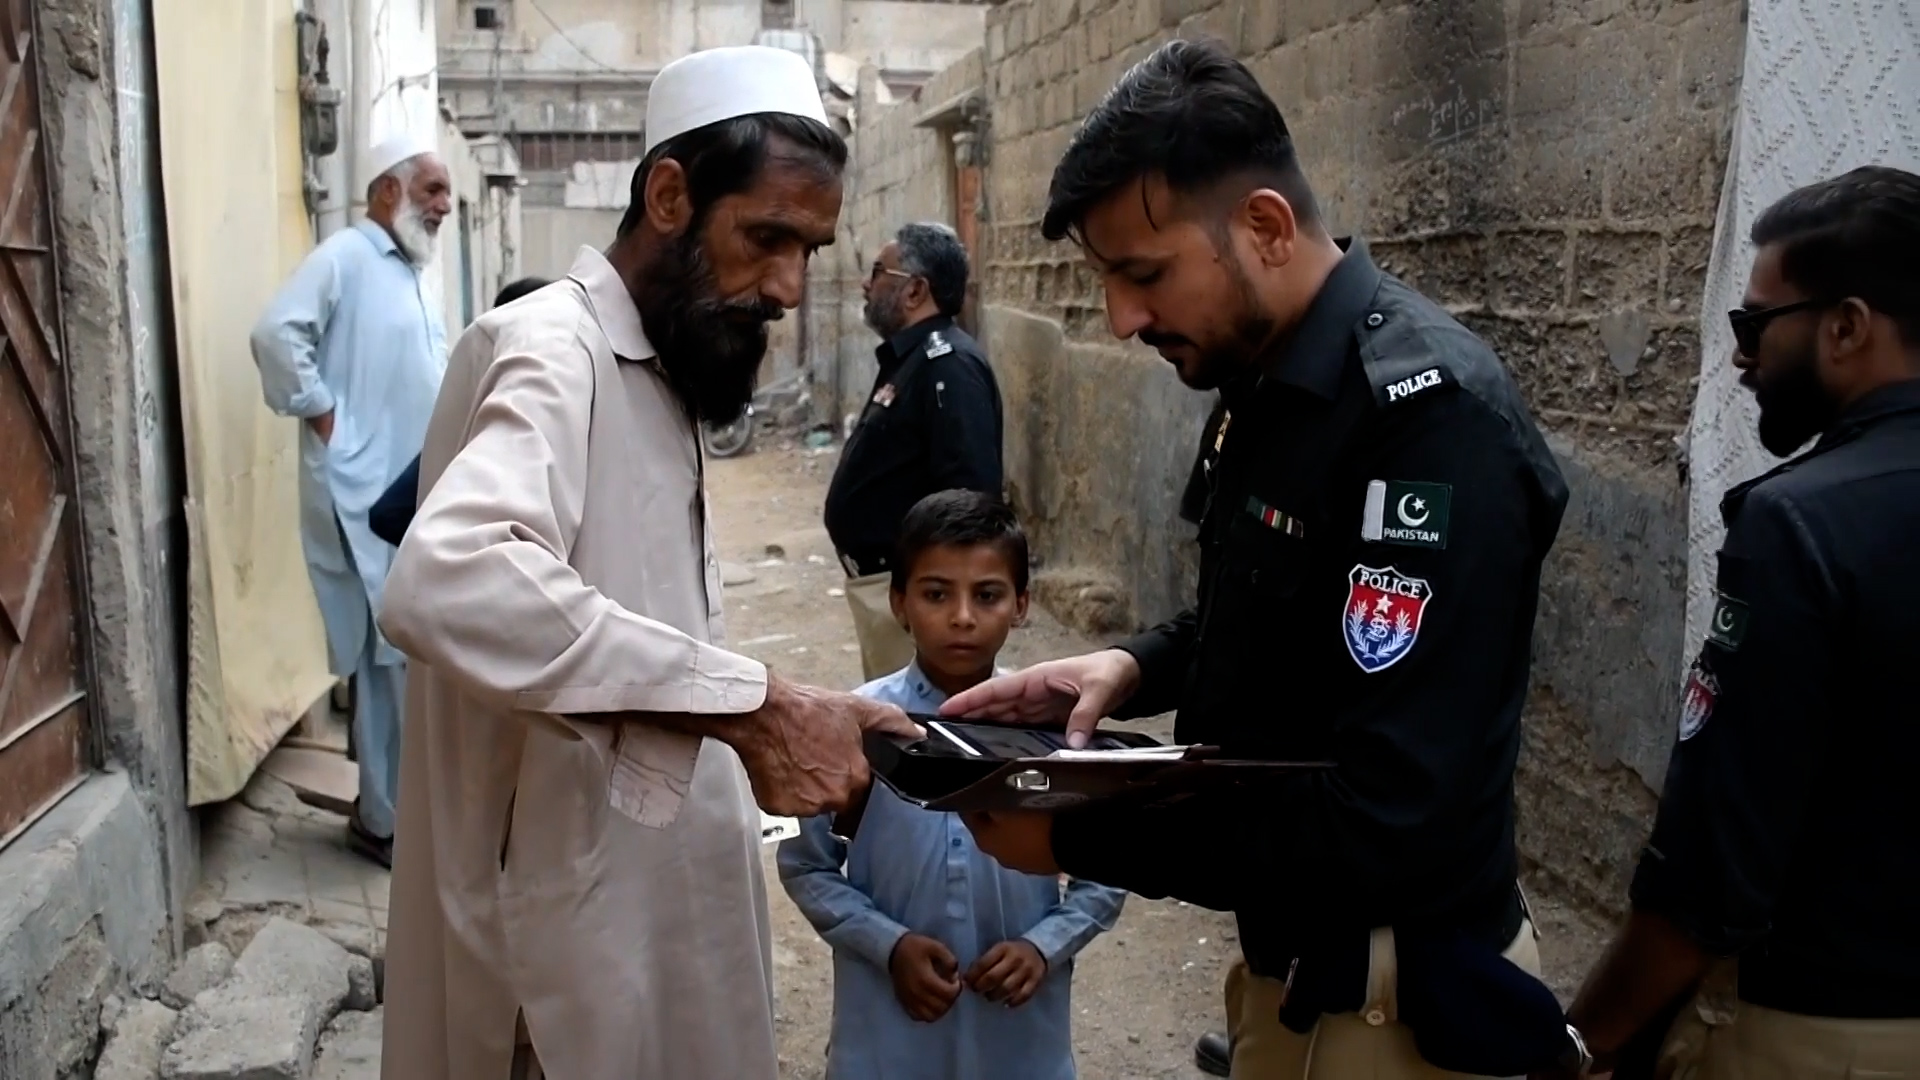 La police pakistanaise arrête les Afghans en situation irrégulière pour les expulser.